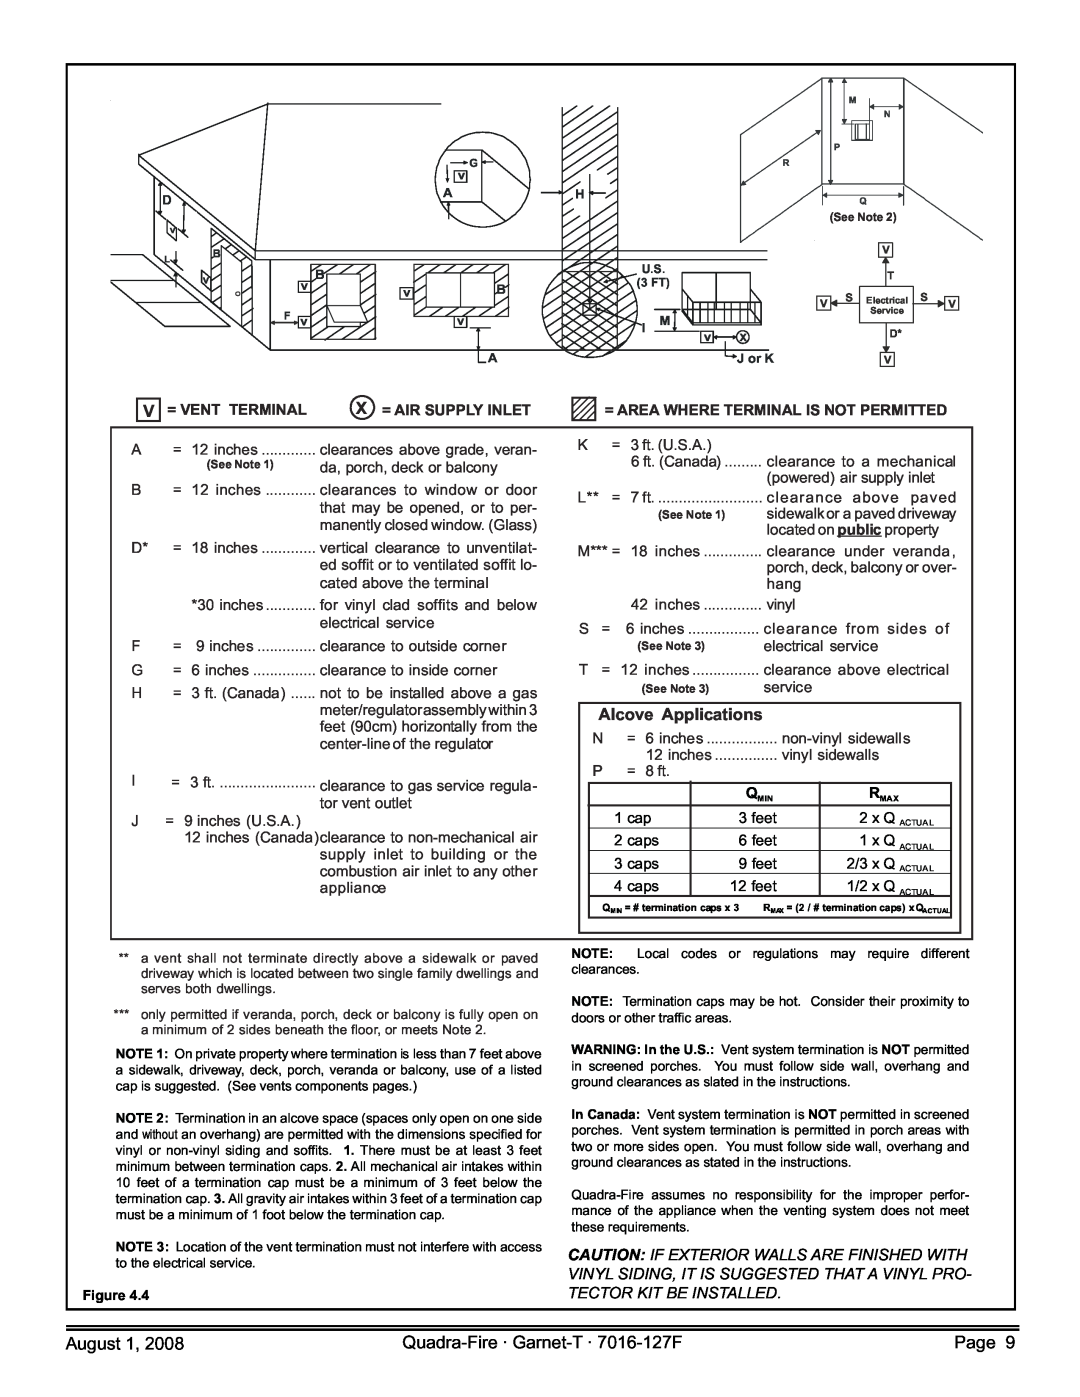 Quadra-Fire GARNET-D-CSB Alcove Applications, = Vent Terminal, X = Air Supply Inlet, 1 cap, feet, caps, 2/3 x Q ACTUA L 